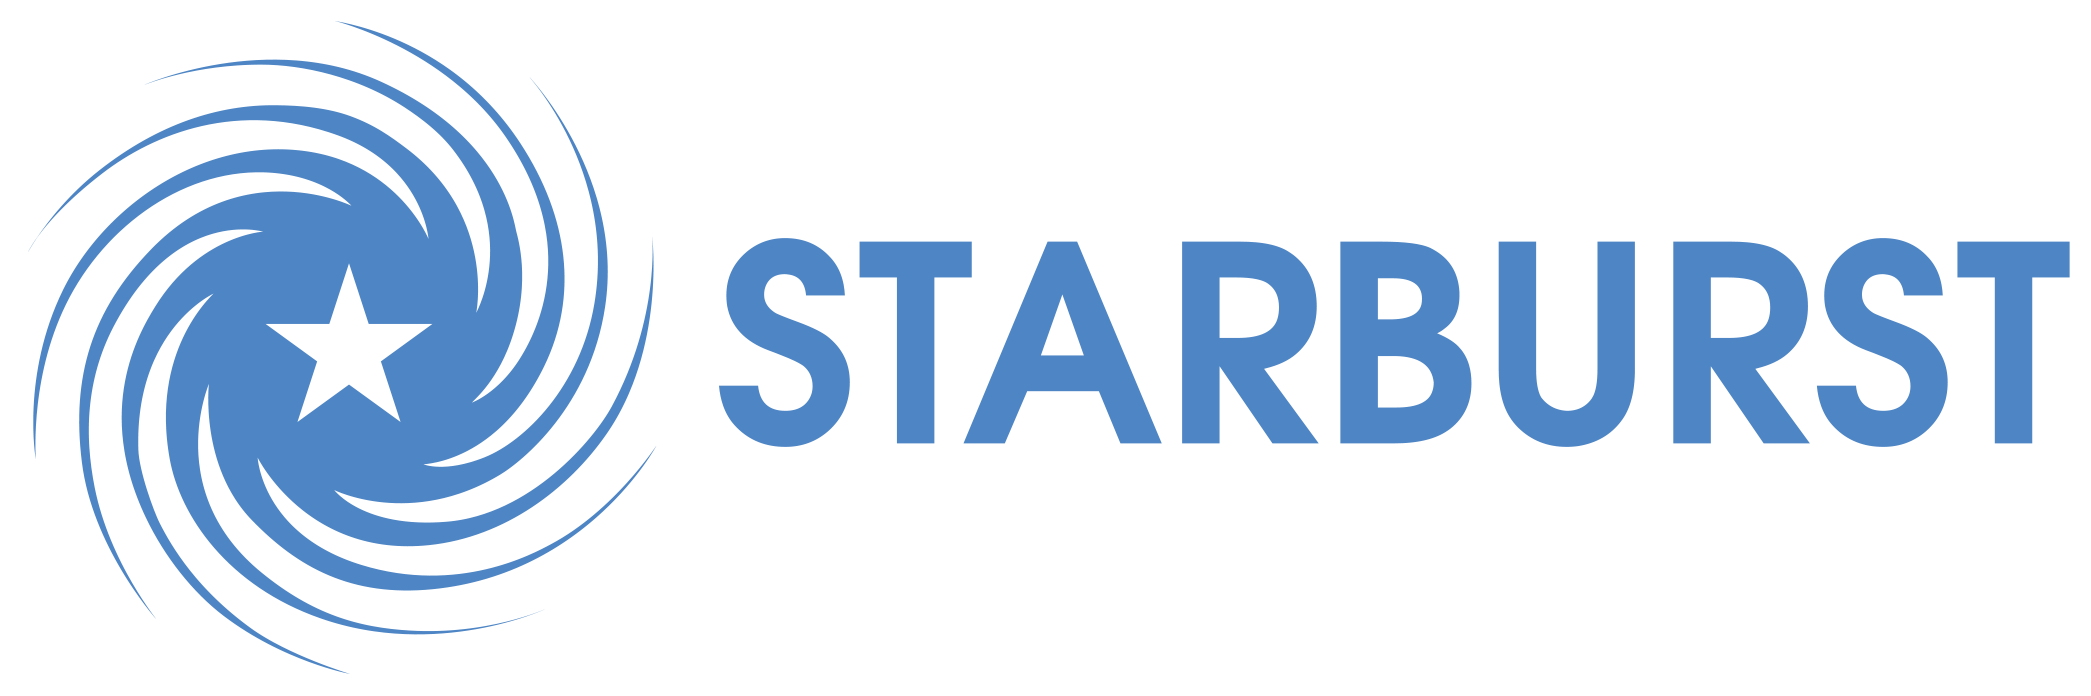 Starburst Logo - Starburst Aerospace » Accelerator | Consulting | Ventures